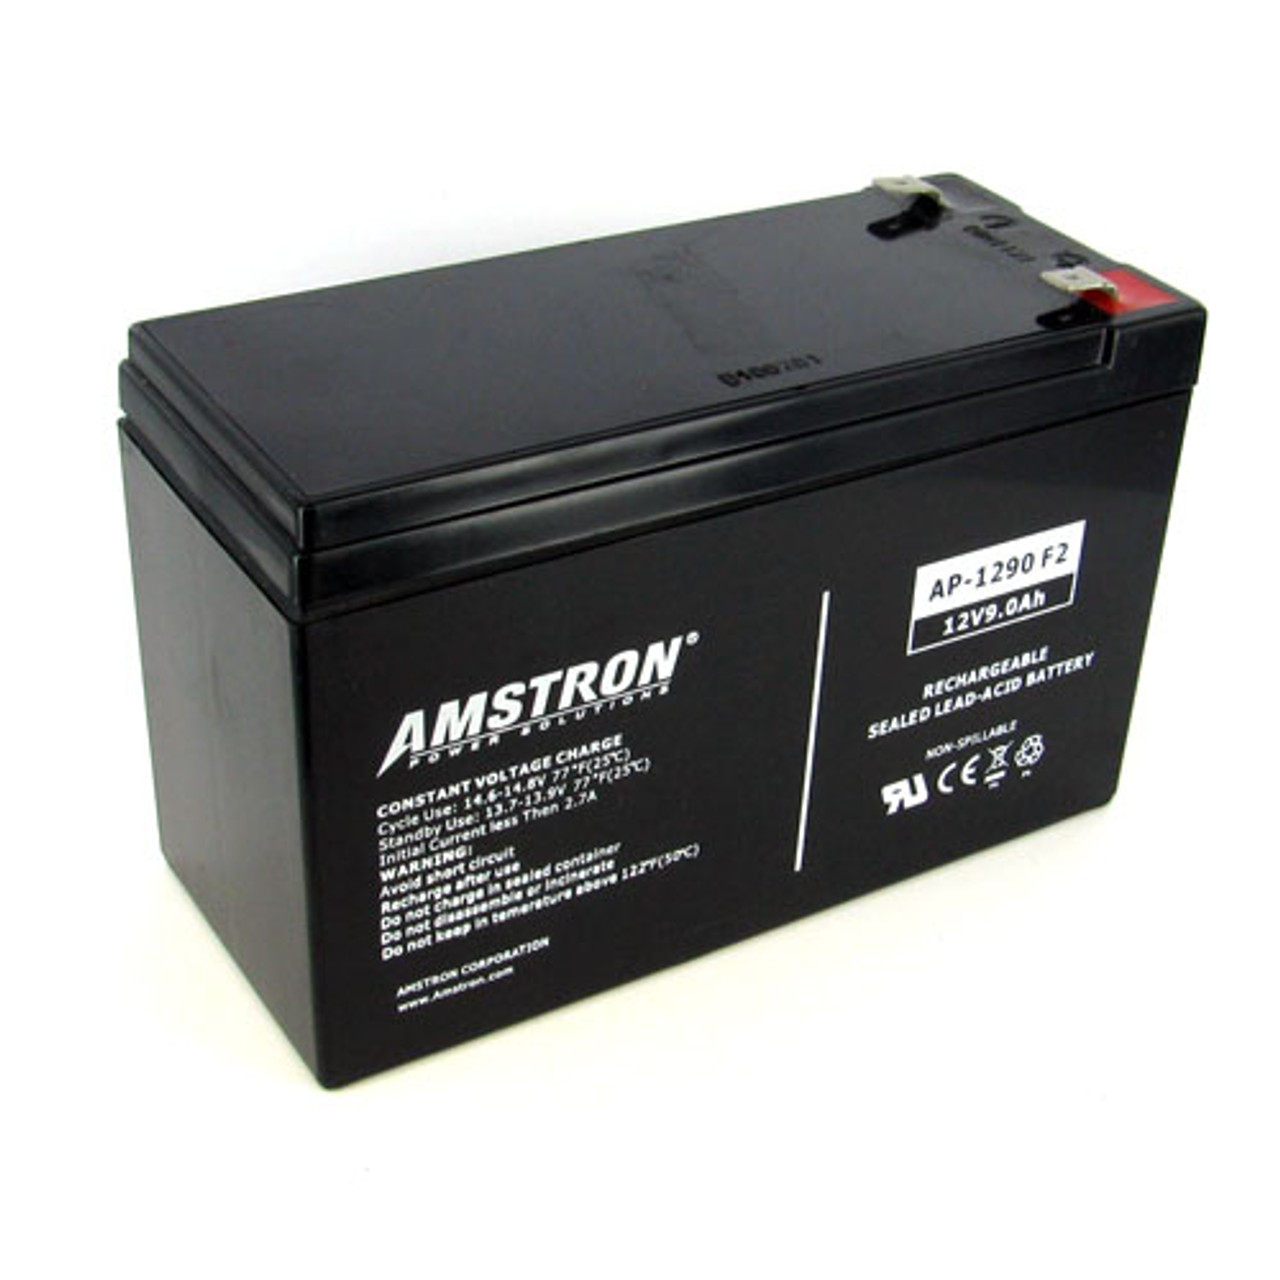 12V 9Ah Batterie au plomb (AGM), B.B. Battery HR9-12, 151x65x94 mm (Lxlxh),  Borne T2 Faston